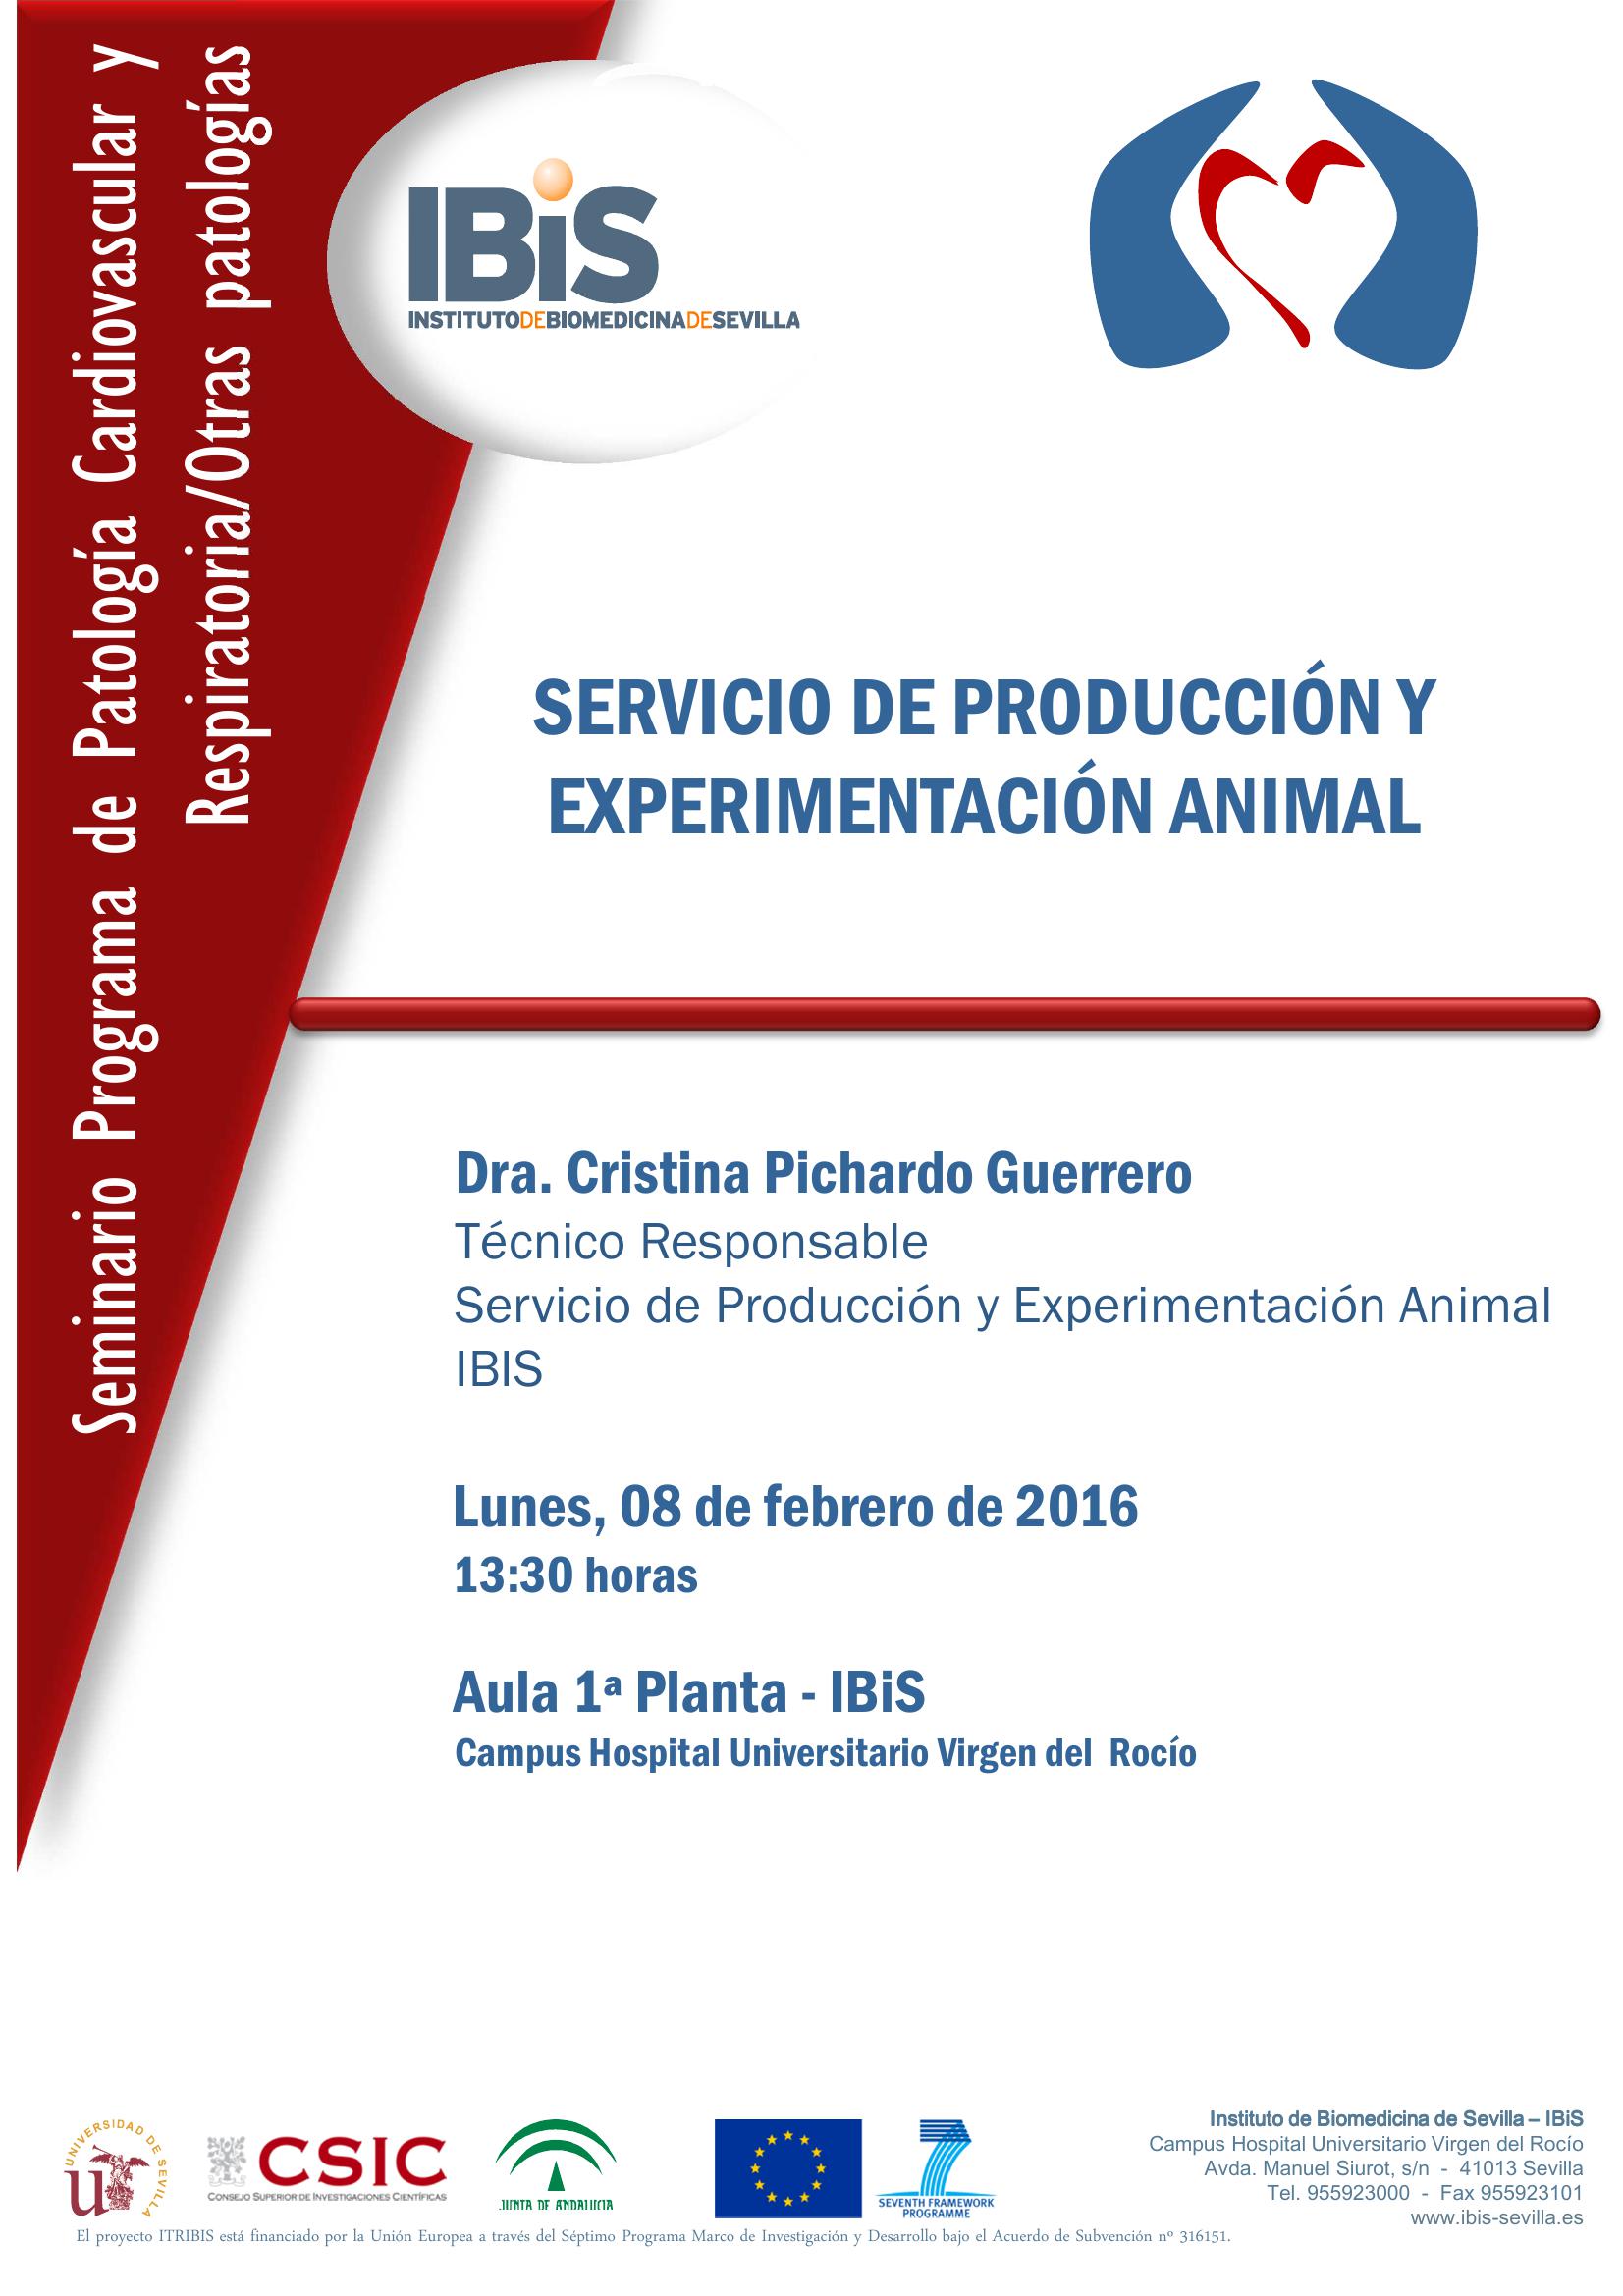 Poster: SERVICIO DE PRODUCCIÓN Y EXPERIMENTACIÓN ANIMAL